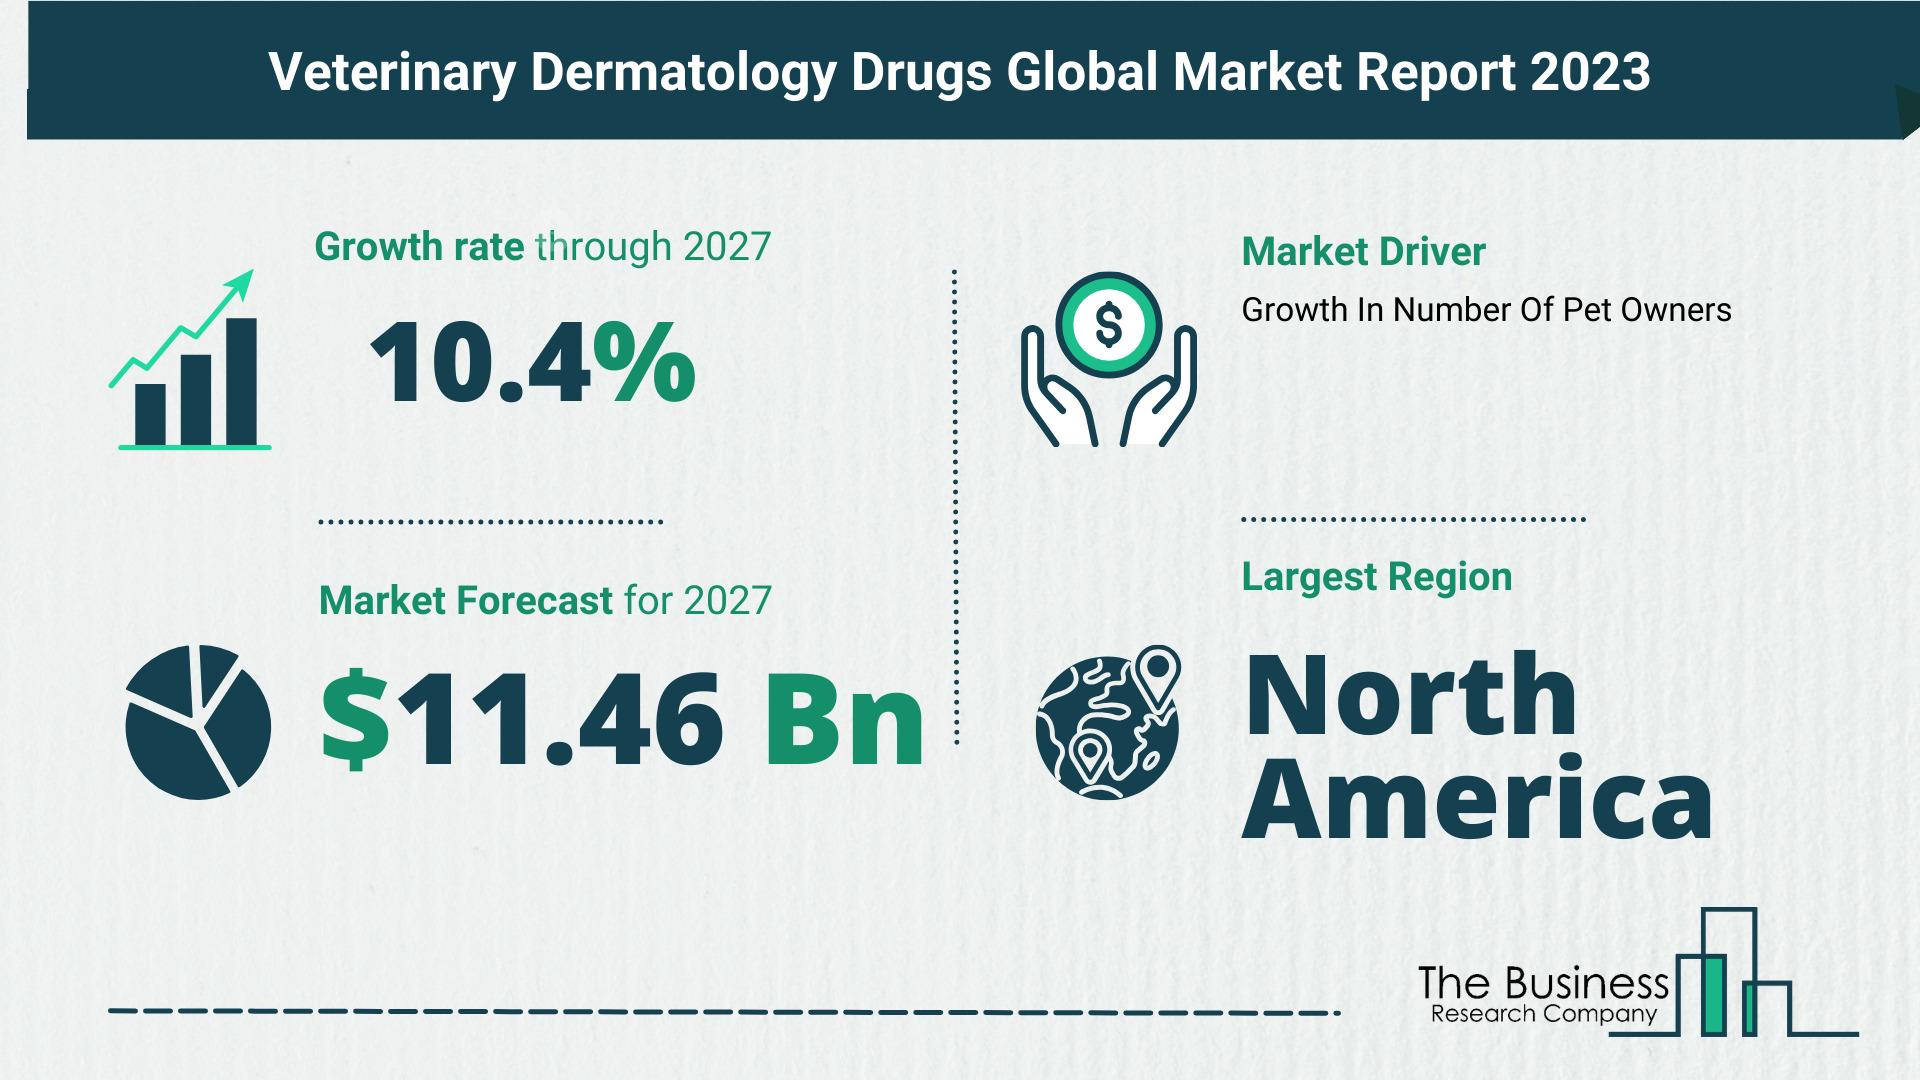 Global Veterinary Dermatology Drugs Market